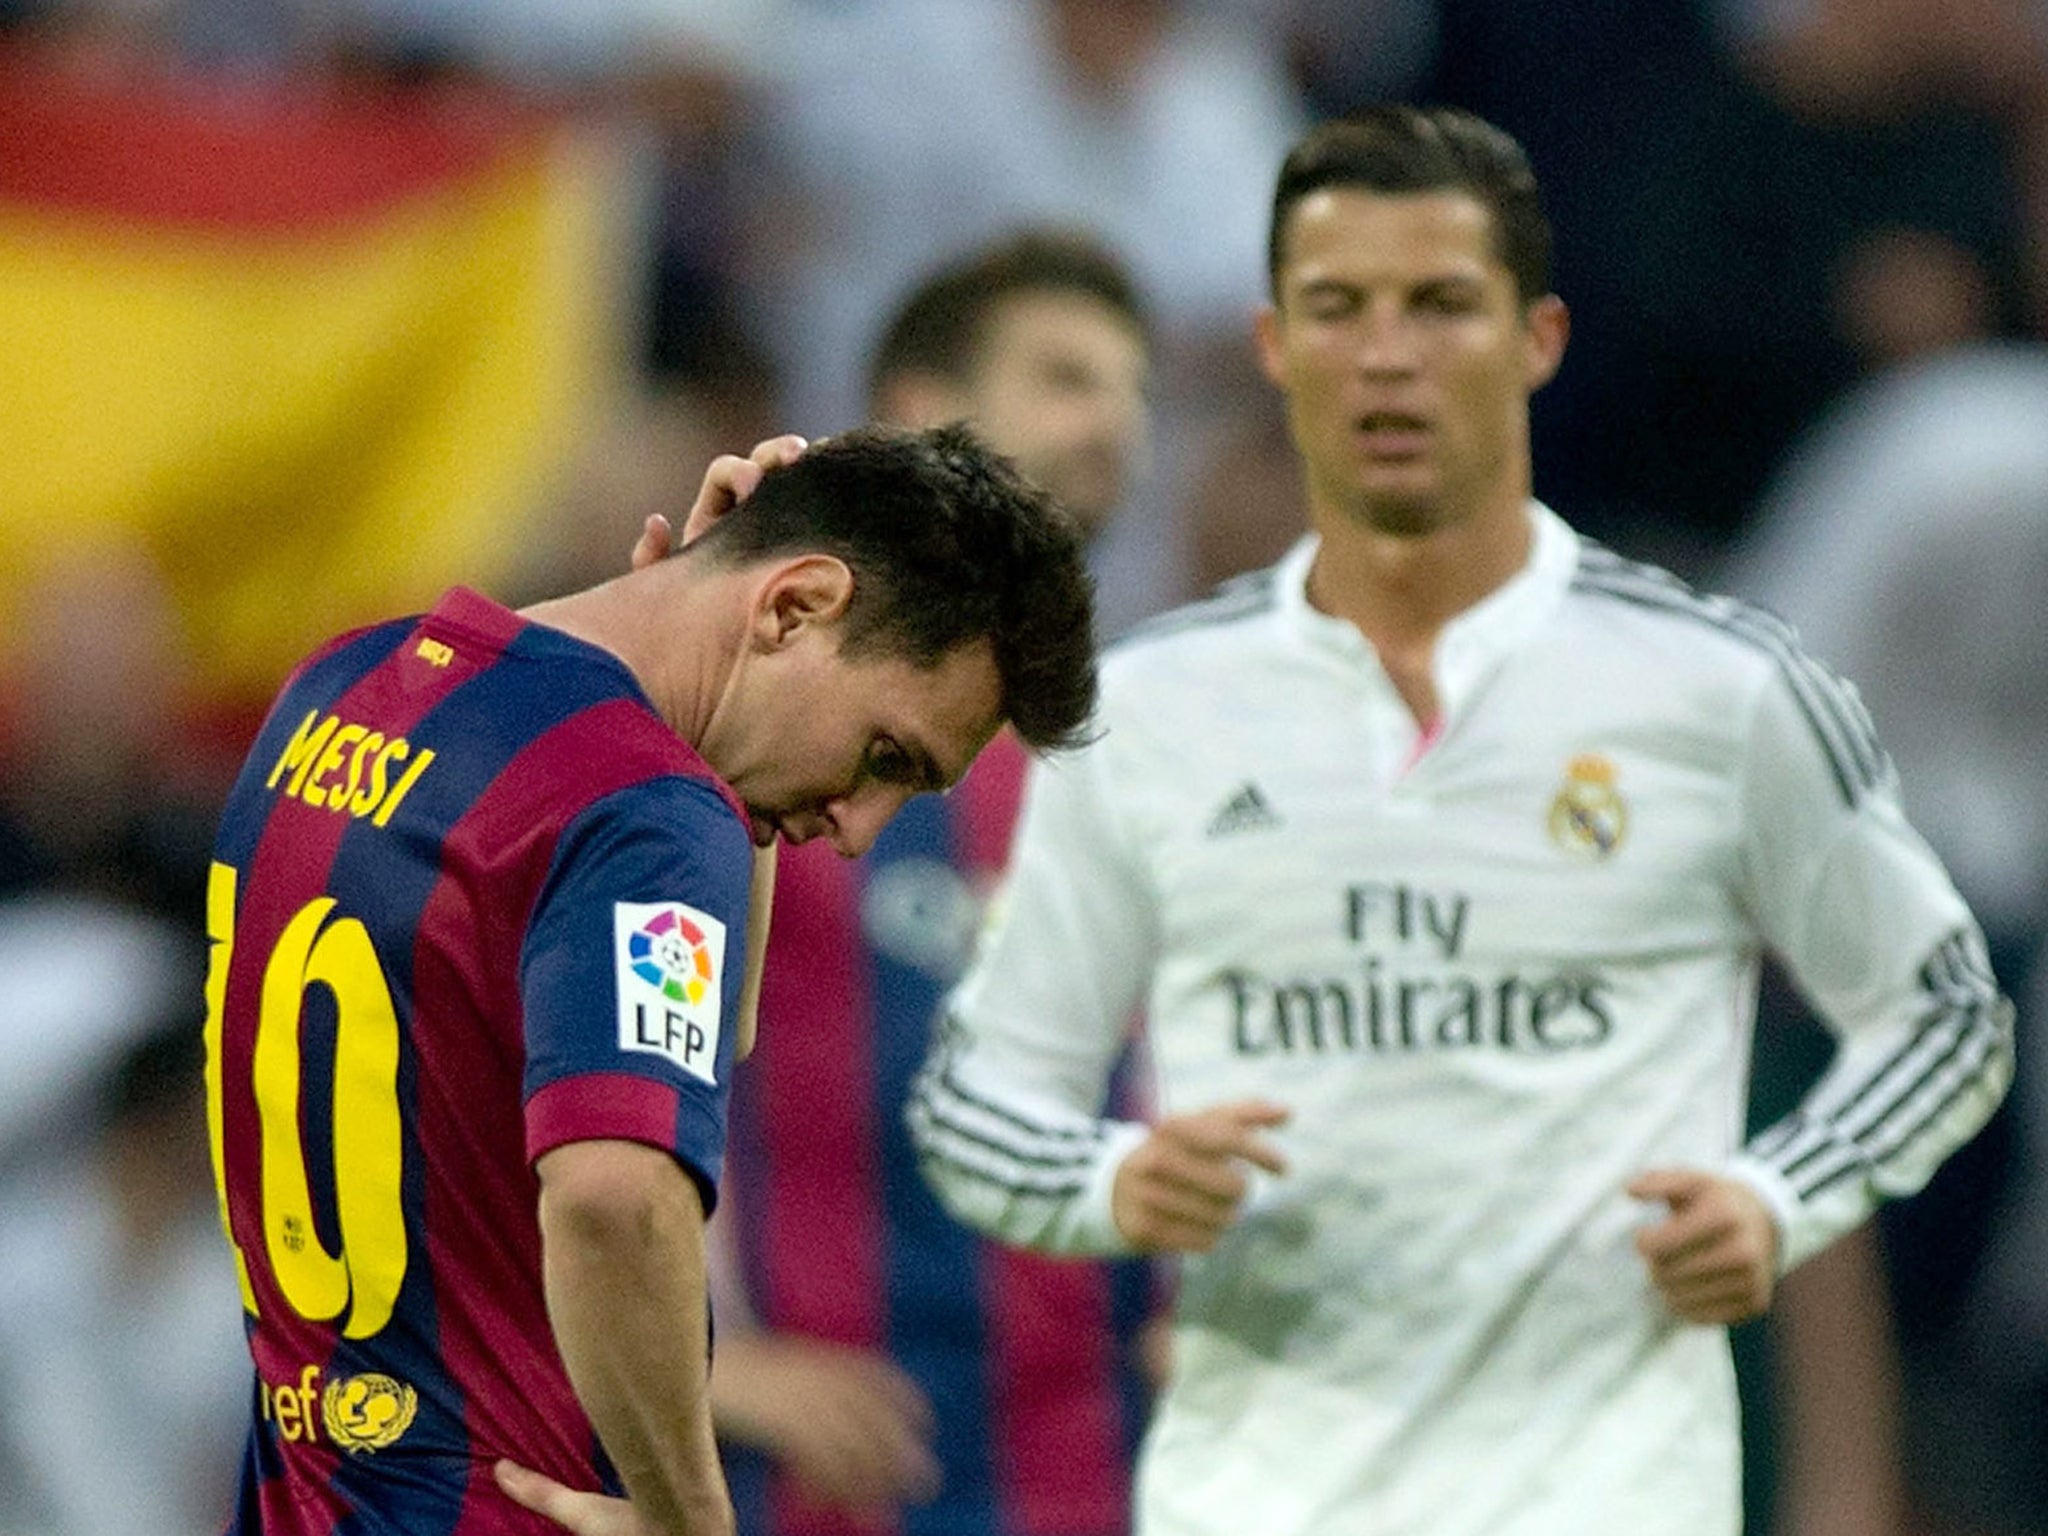 Lionel Messi and Cristiano Ronaldo come together